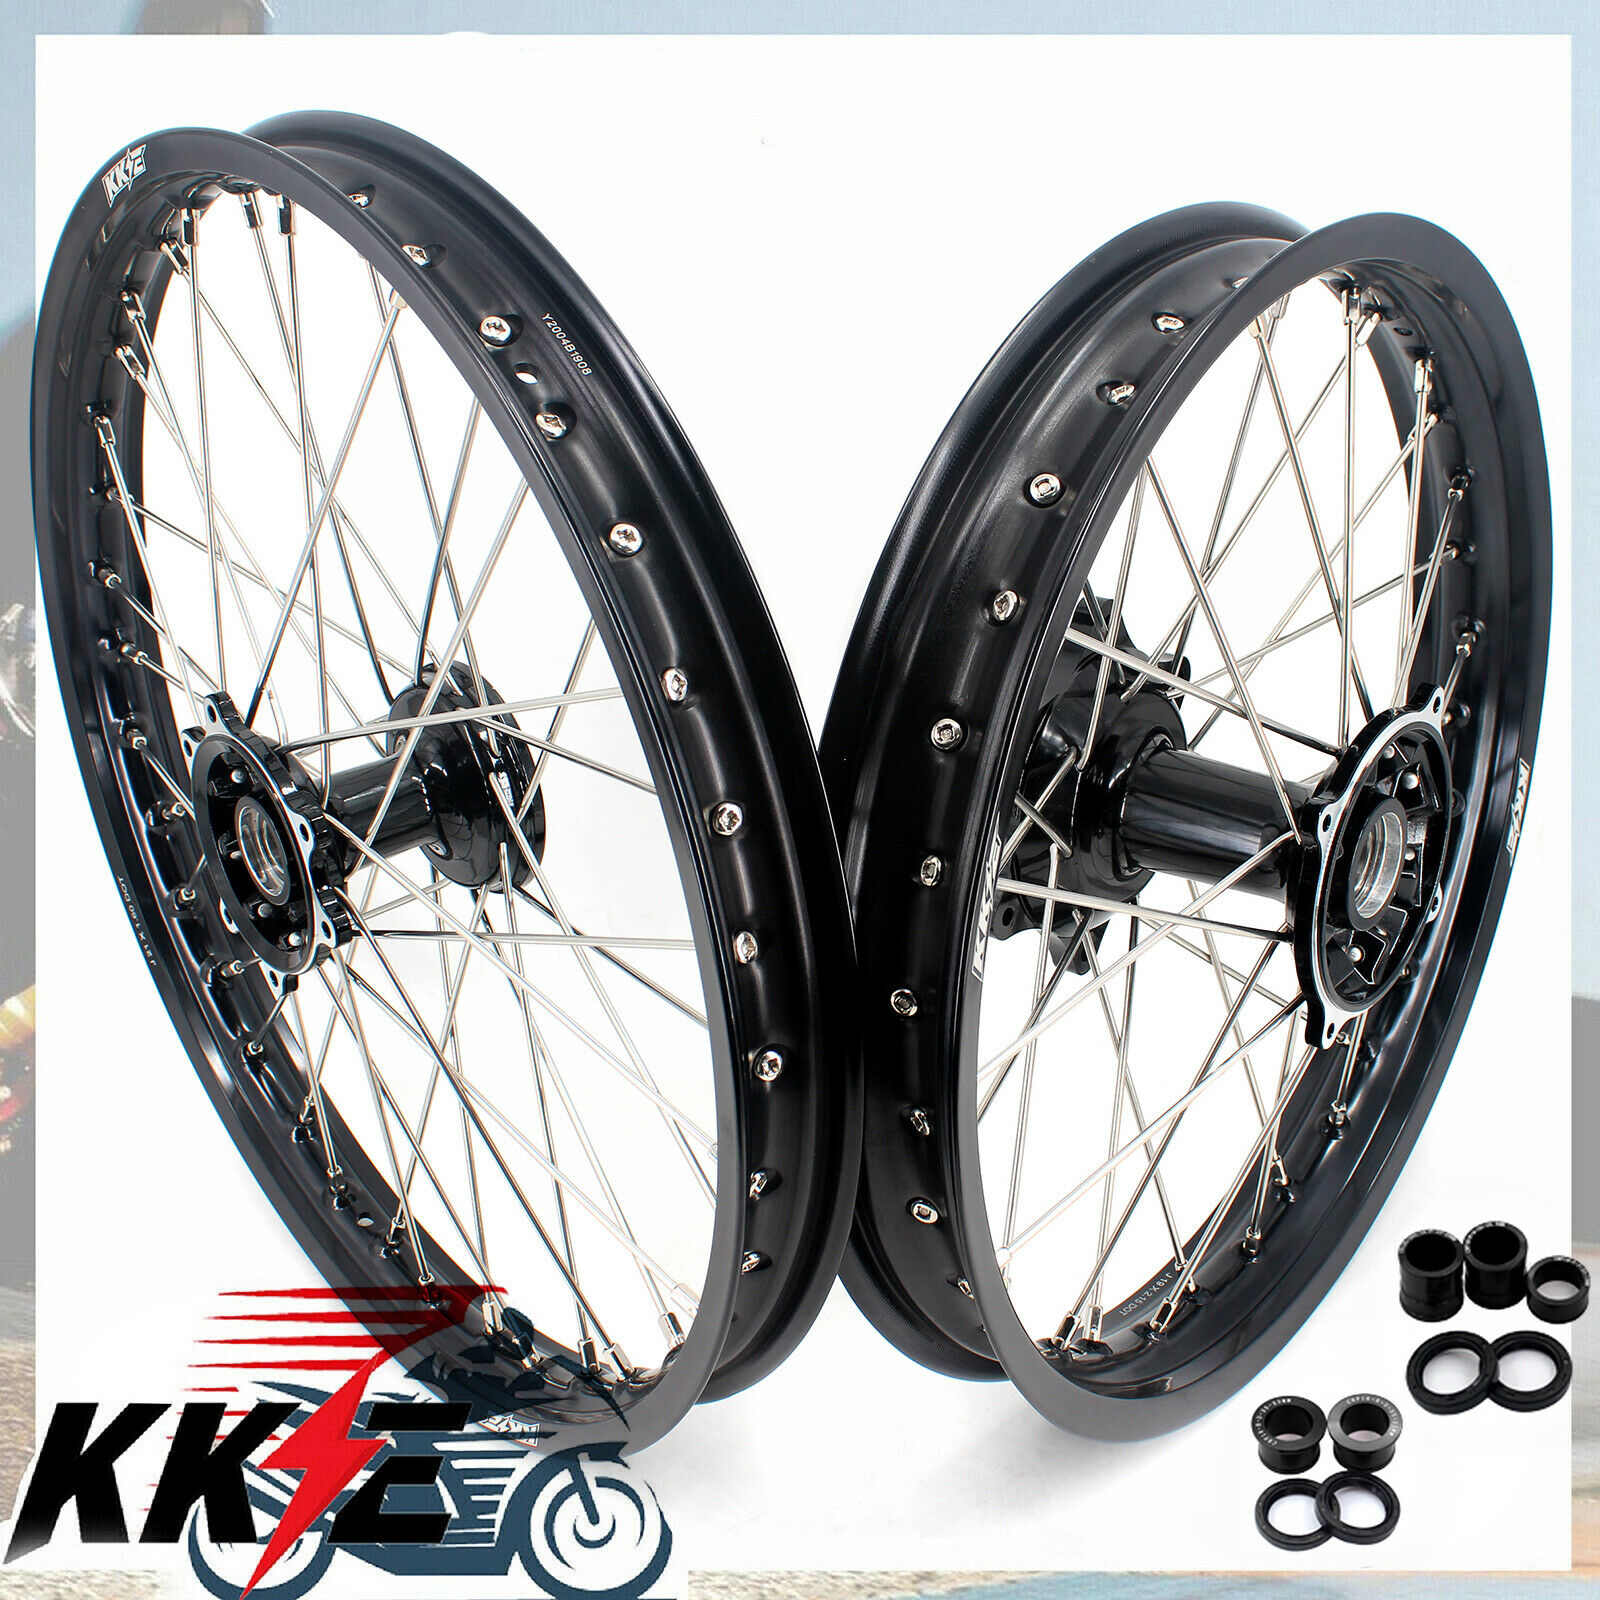 Kke 21/19 Cast Mx Wheels Rims Fit Cr125r Cr250r Crf250r 2004-2013 Crf450r Black